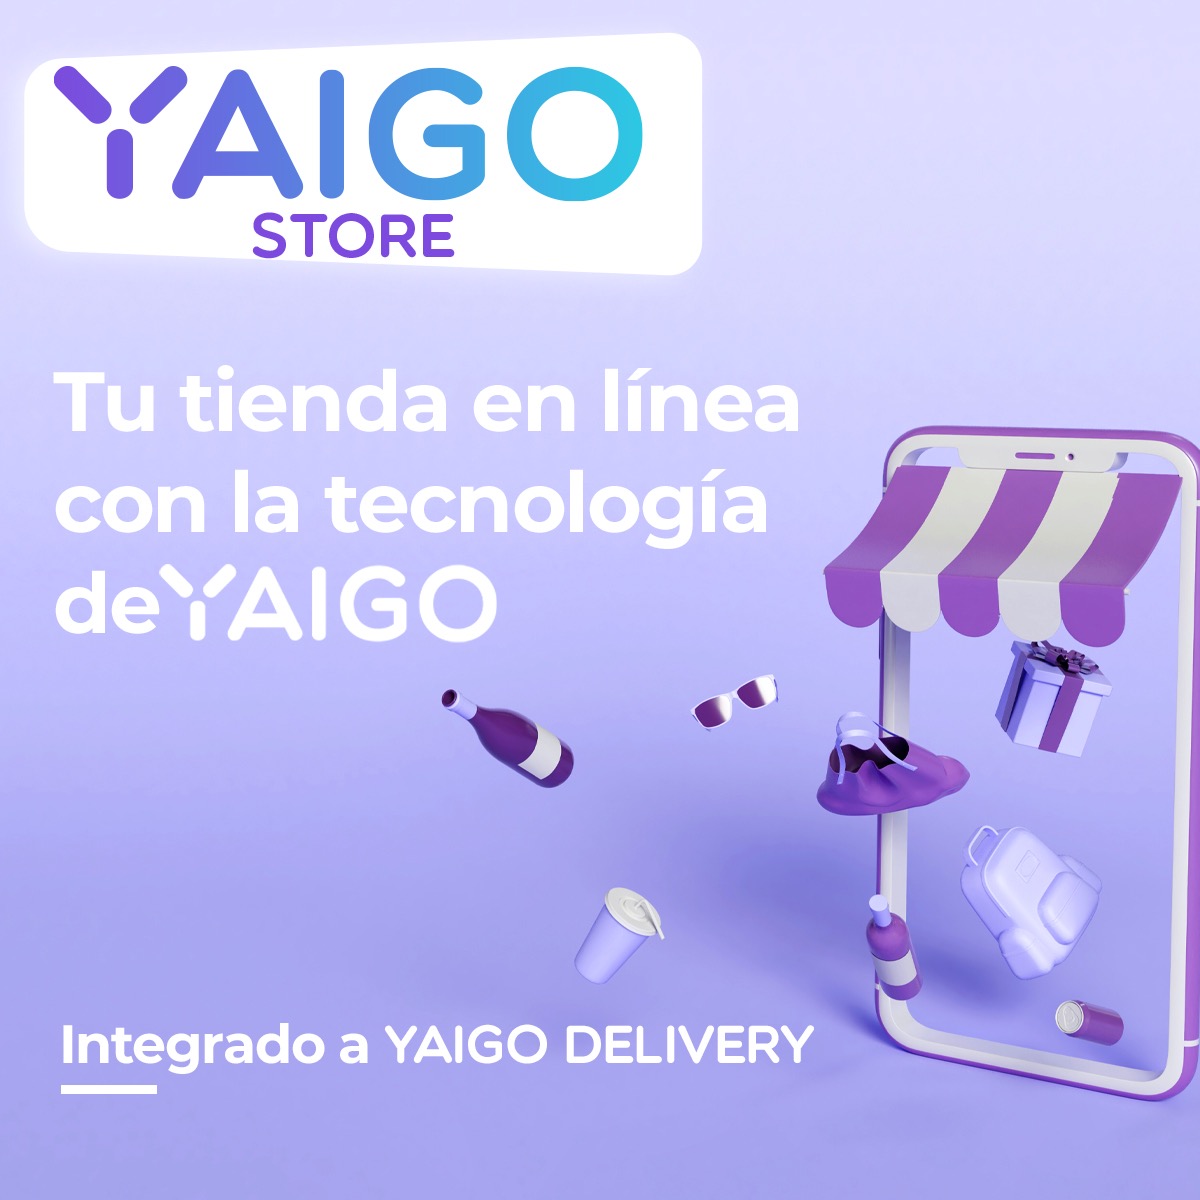 Yaigo Store: una plataforma para optimizar las operaciones de los comercios